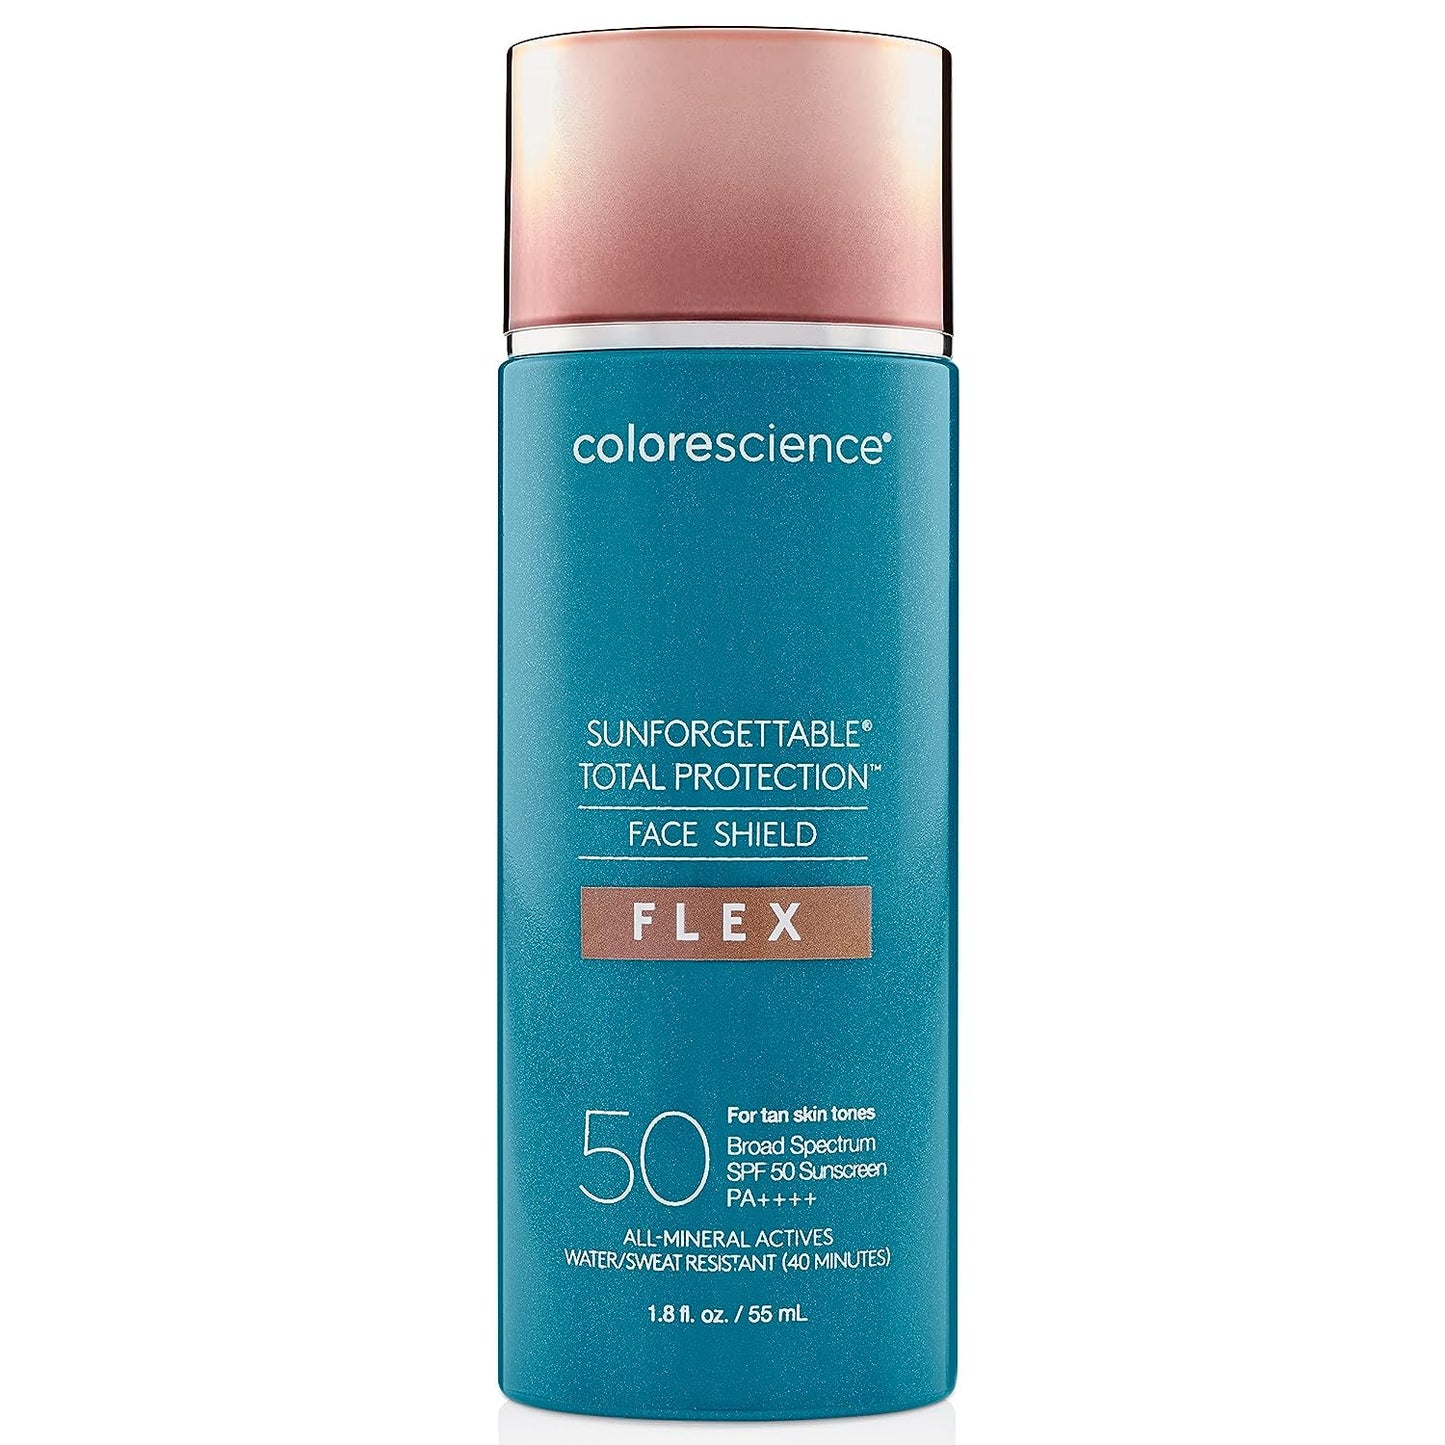 Colorescience Face Shield Flex SPF 50 in Tan